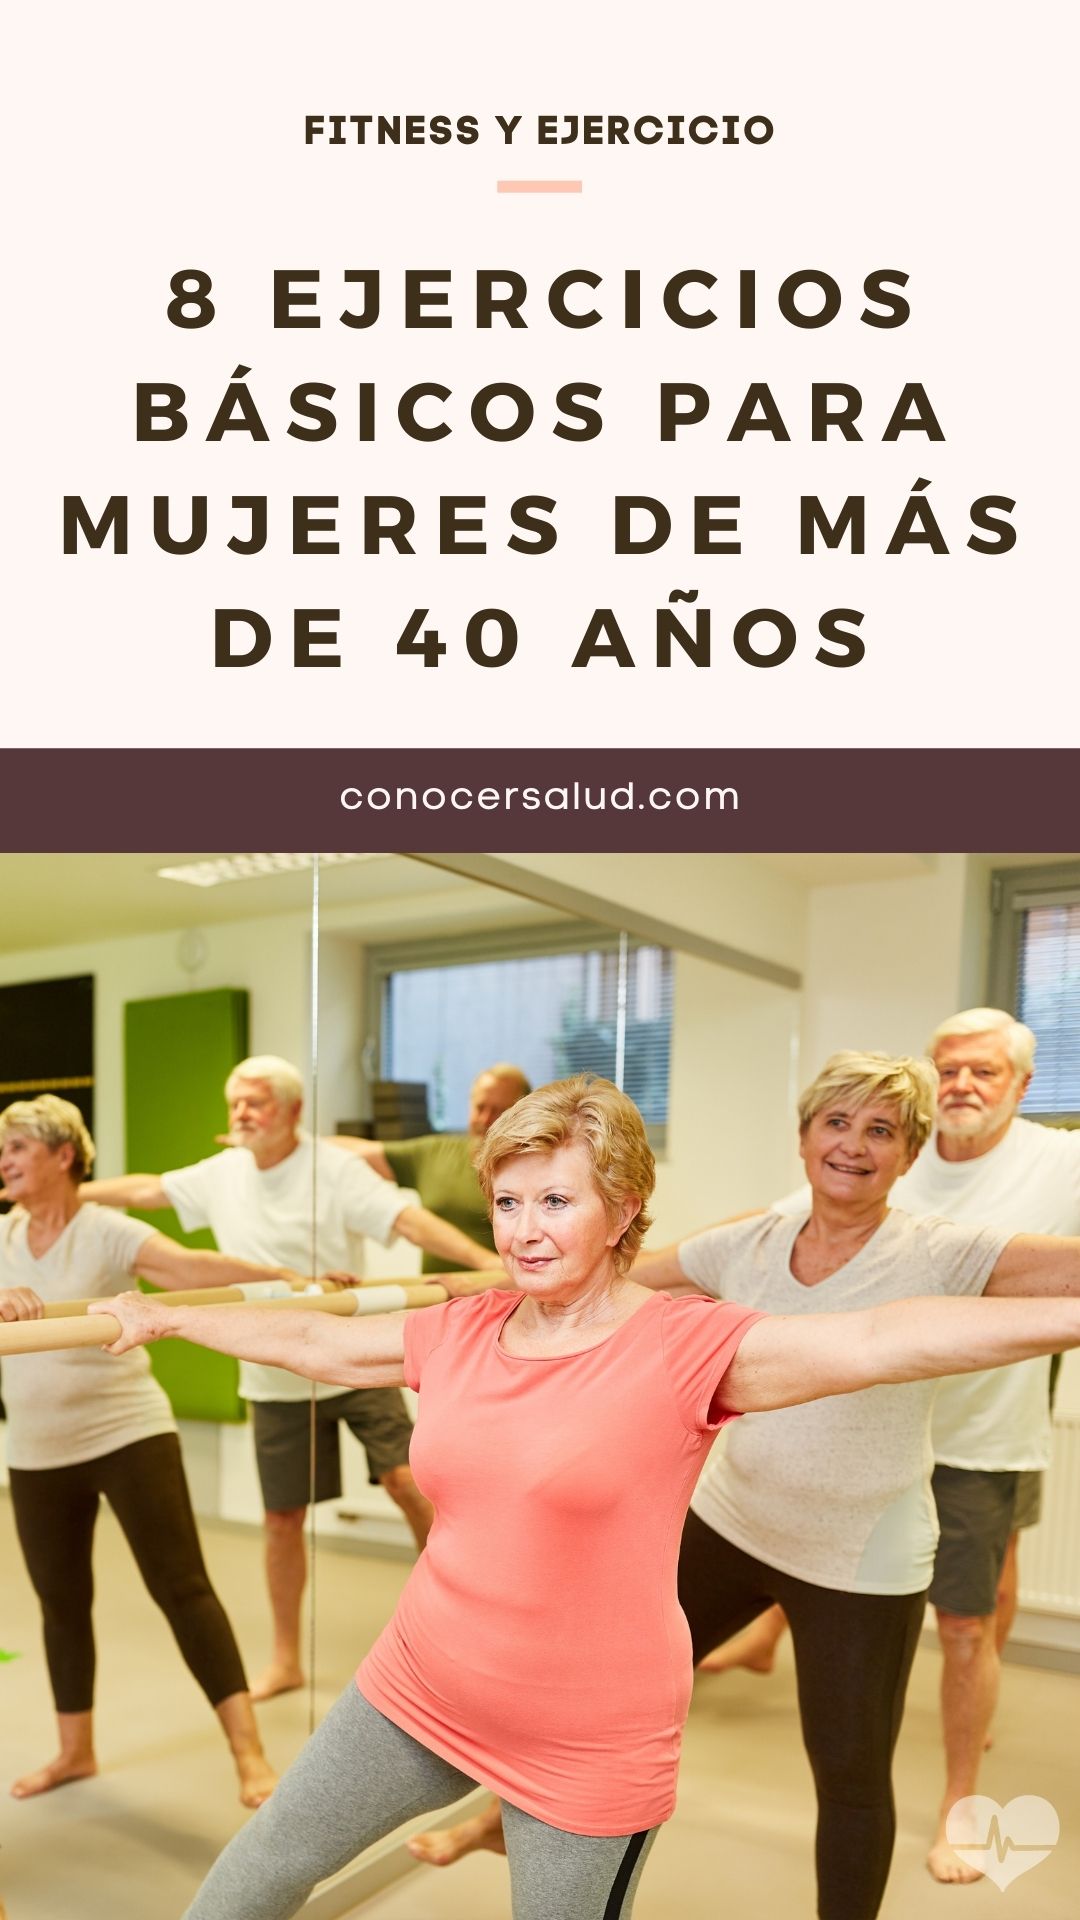 8 ejercicios básicos para mujeres de más de 40 años